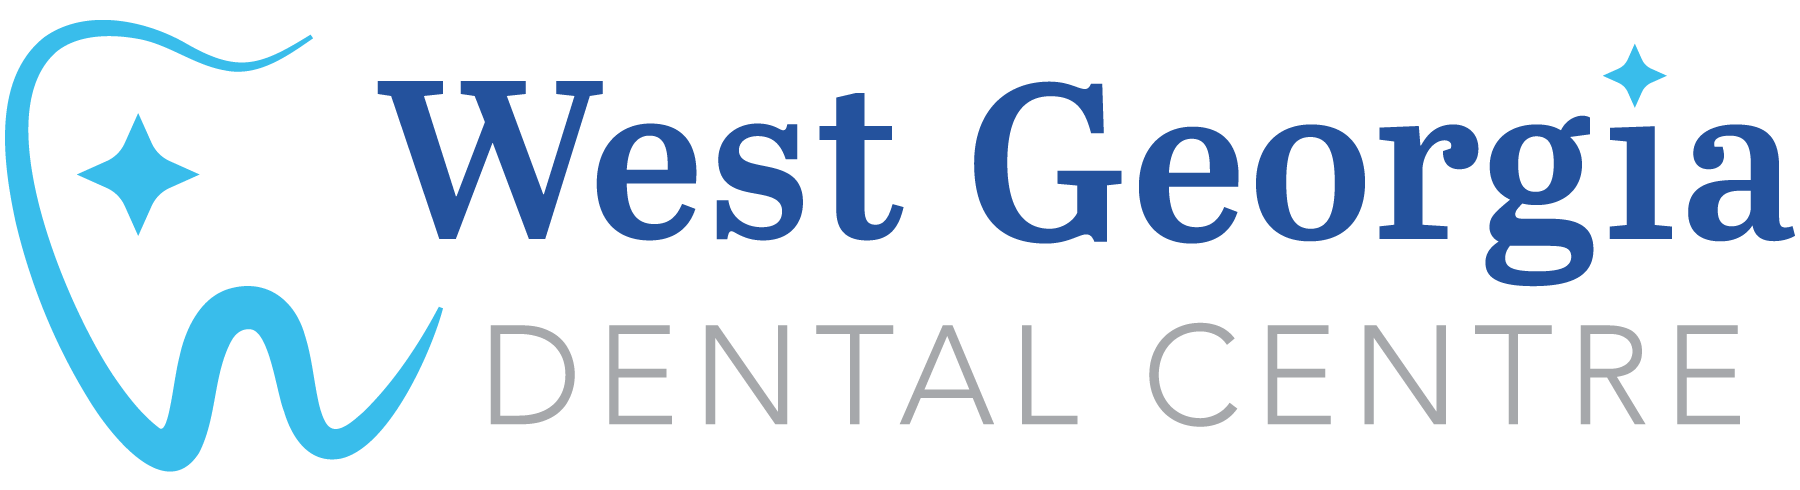 West Georgia Dental Centre